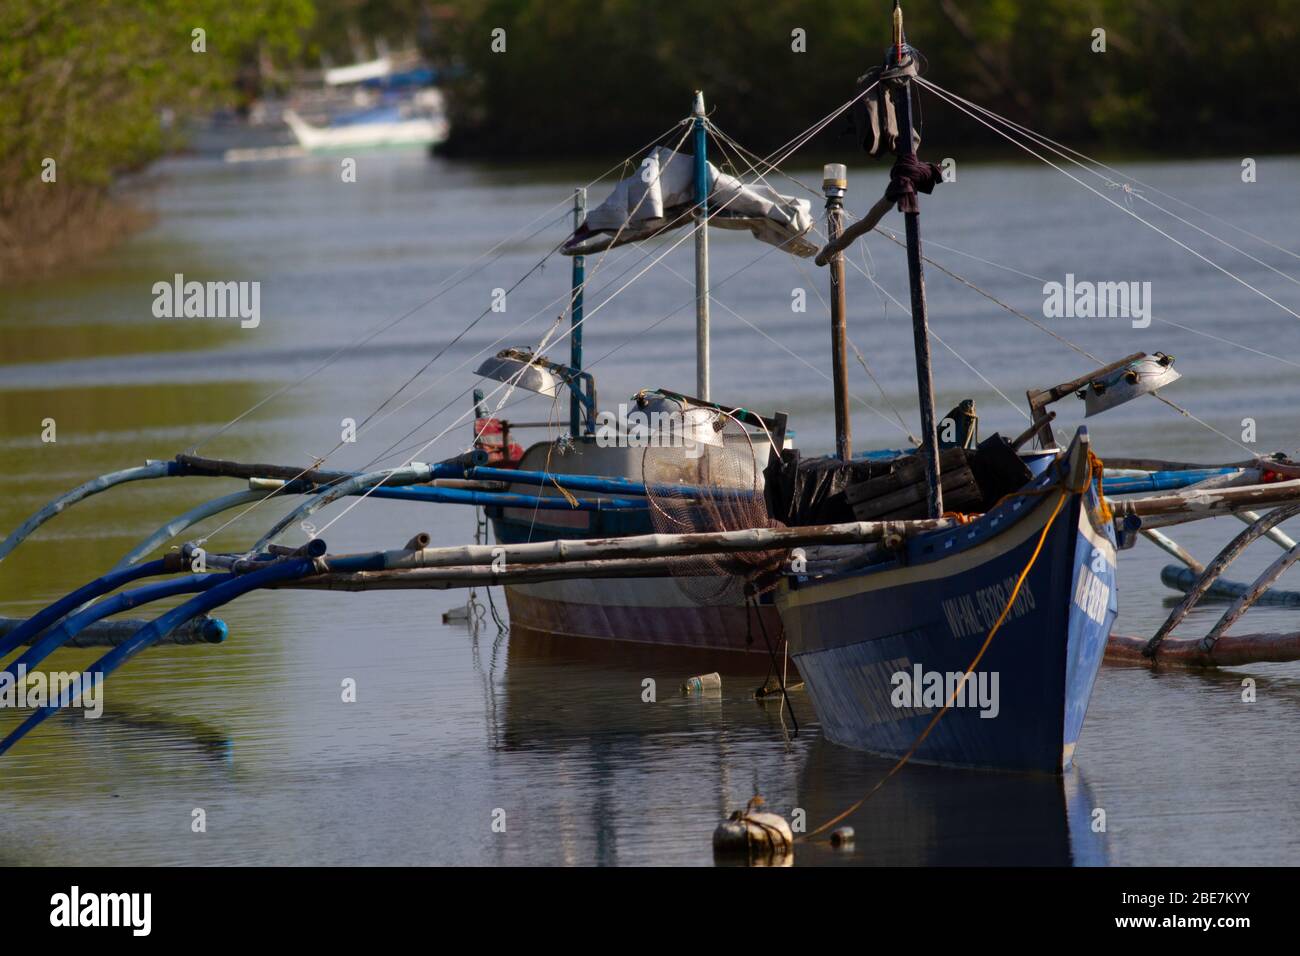 Philippinische einheimische Boot in ruhigem Wasser Stockfoto